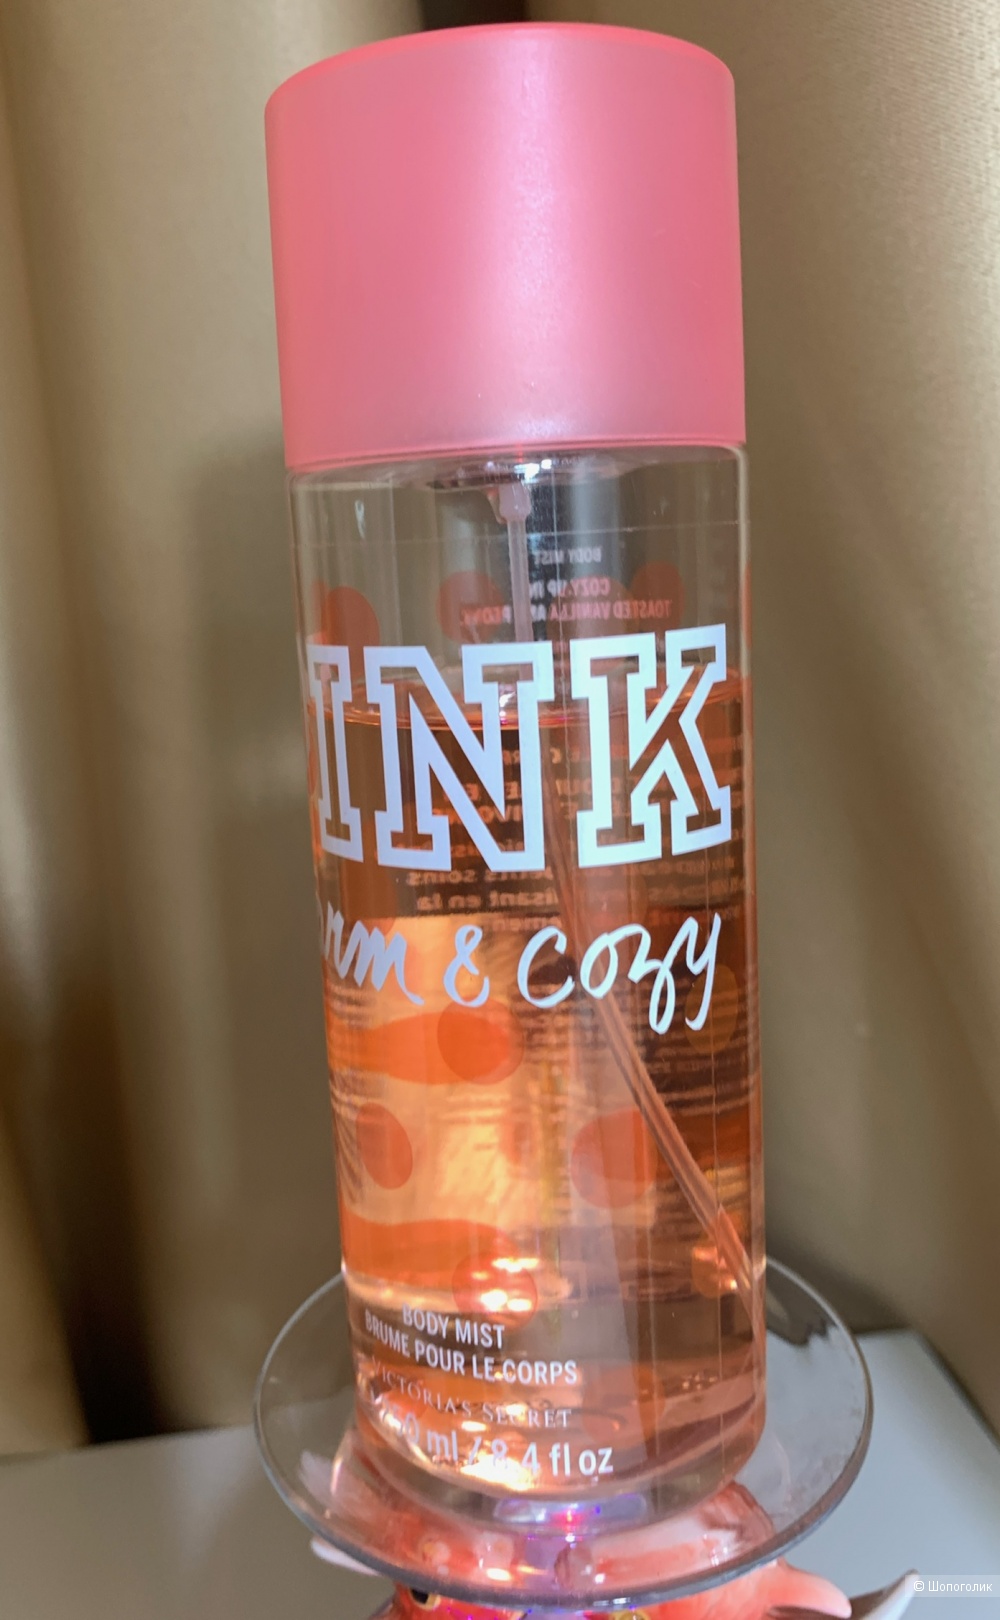 Body mist Victorias Secret PINK WARM&COZY 180-200 ml из 250